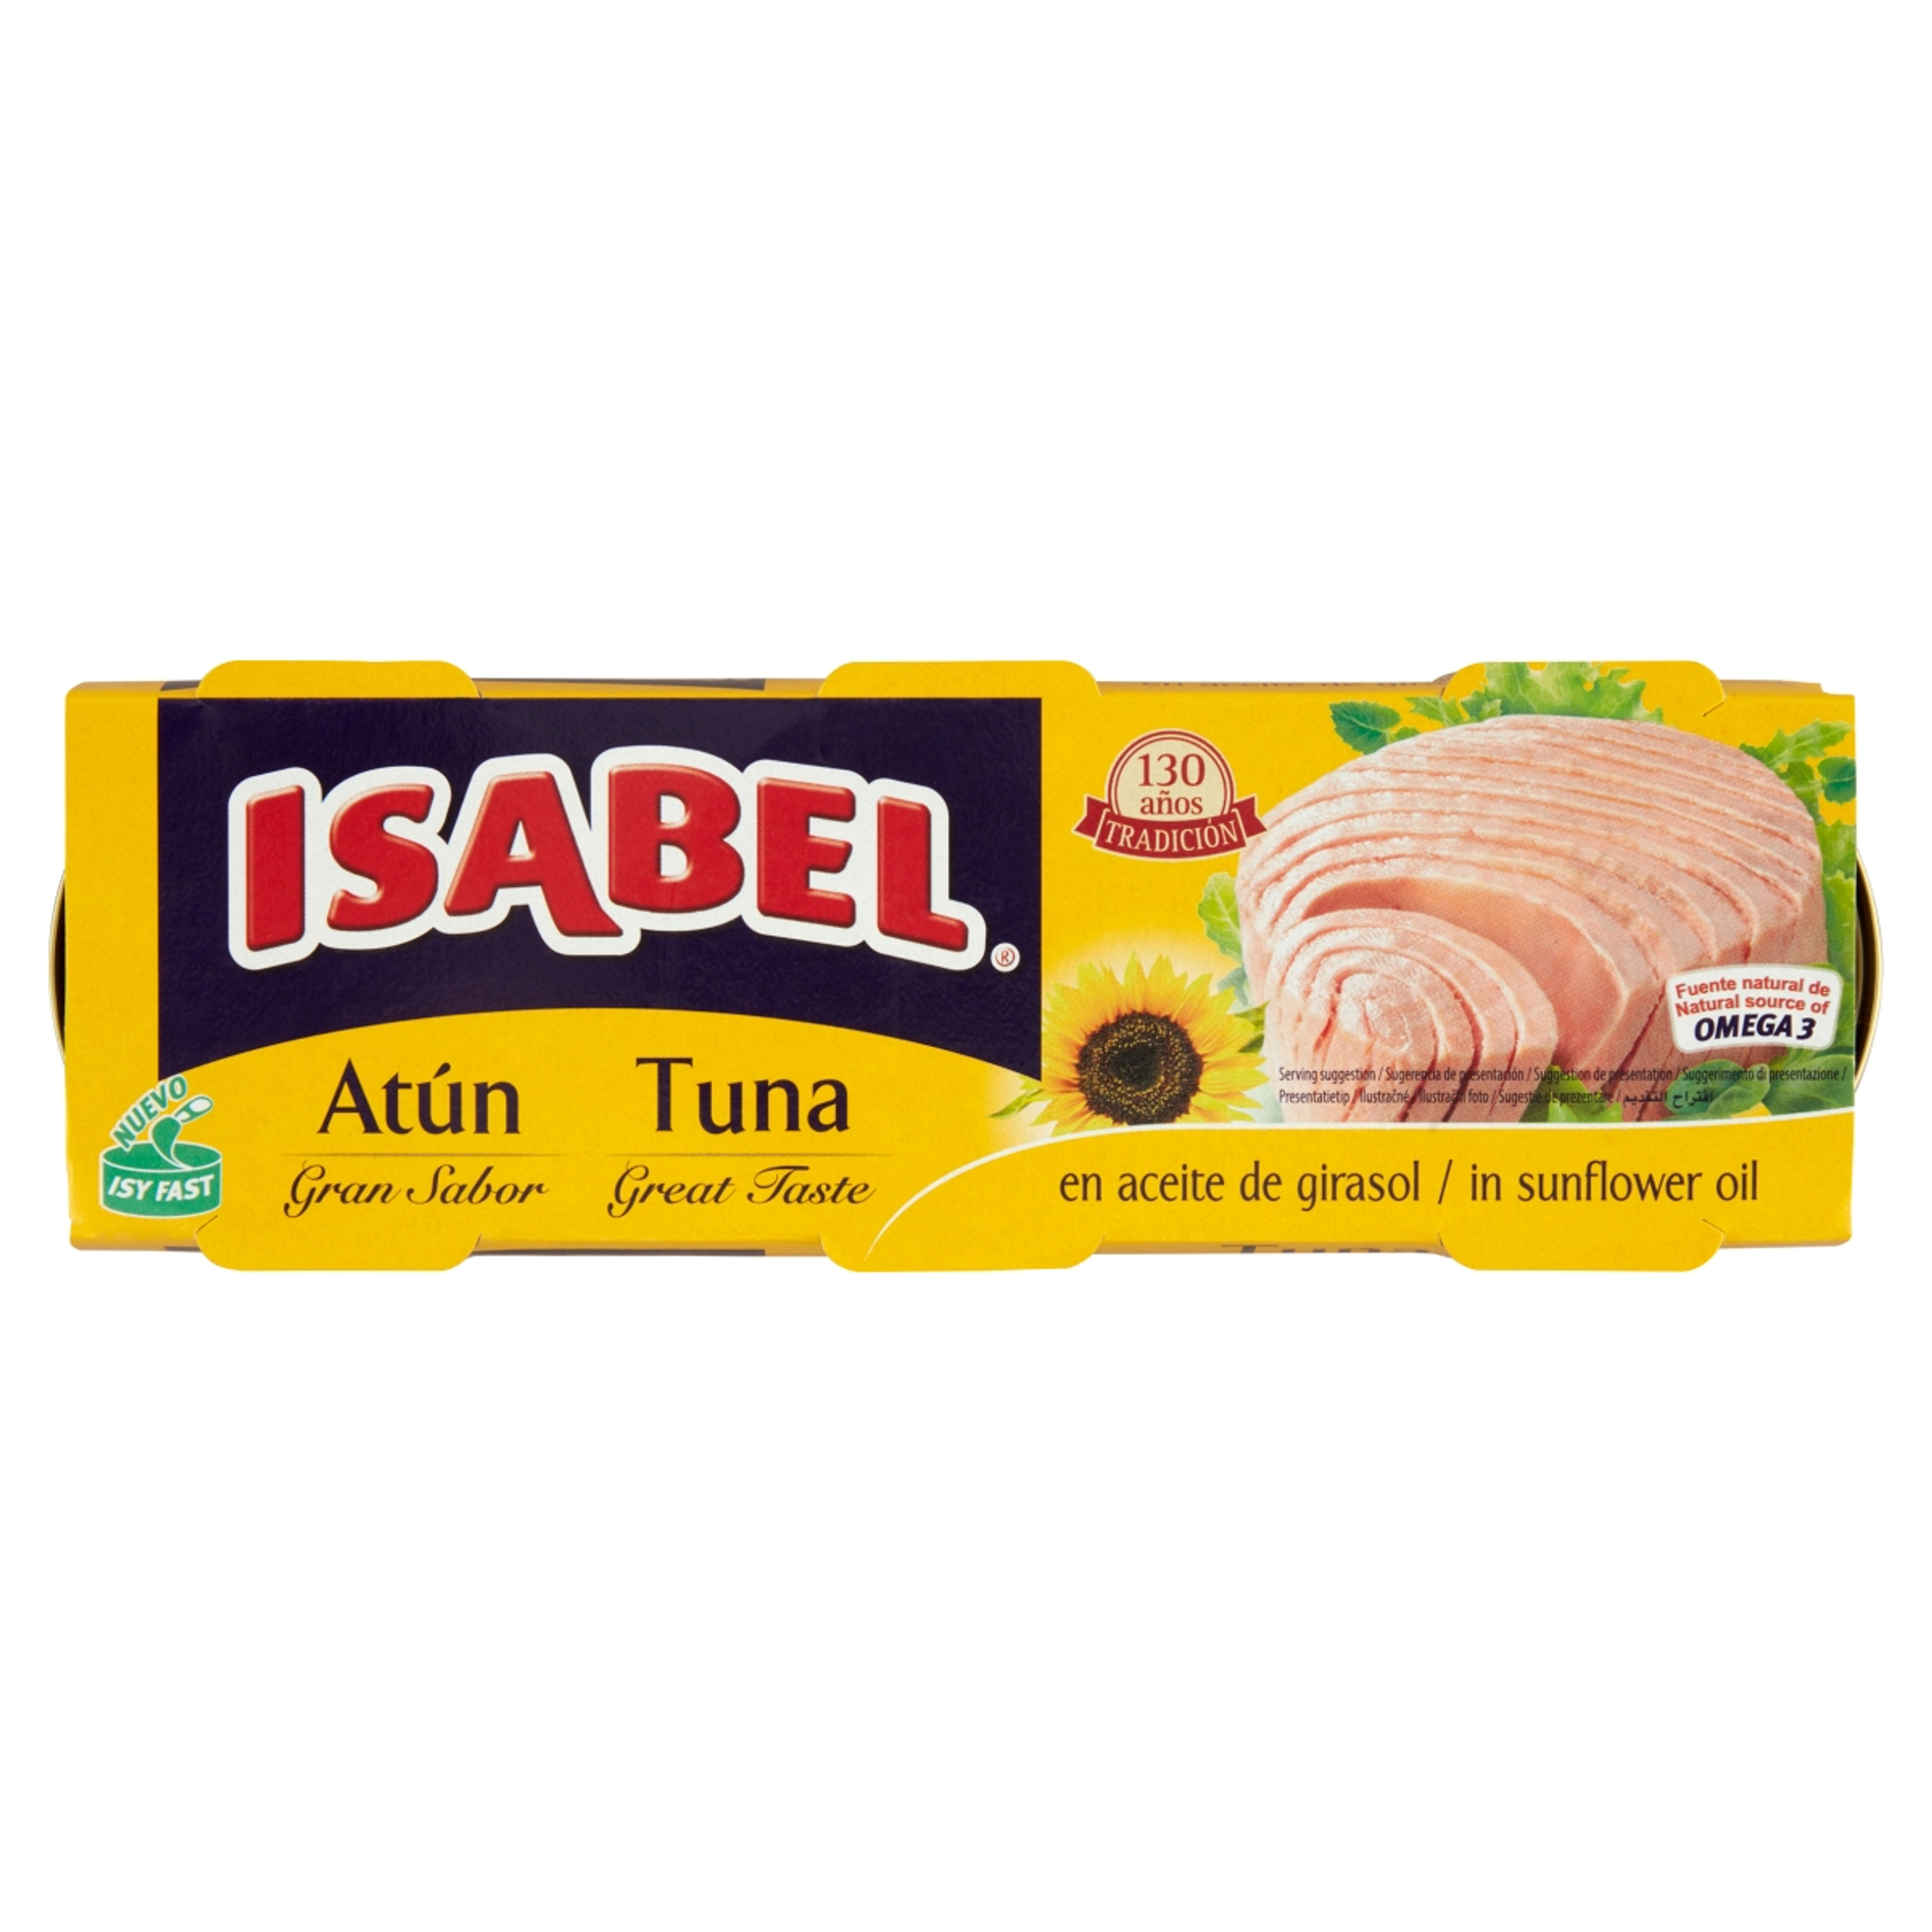 Isabel tonhal napraforgó-étolajban - 240 g